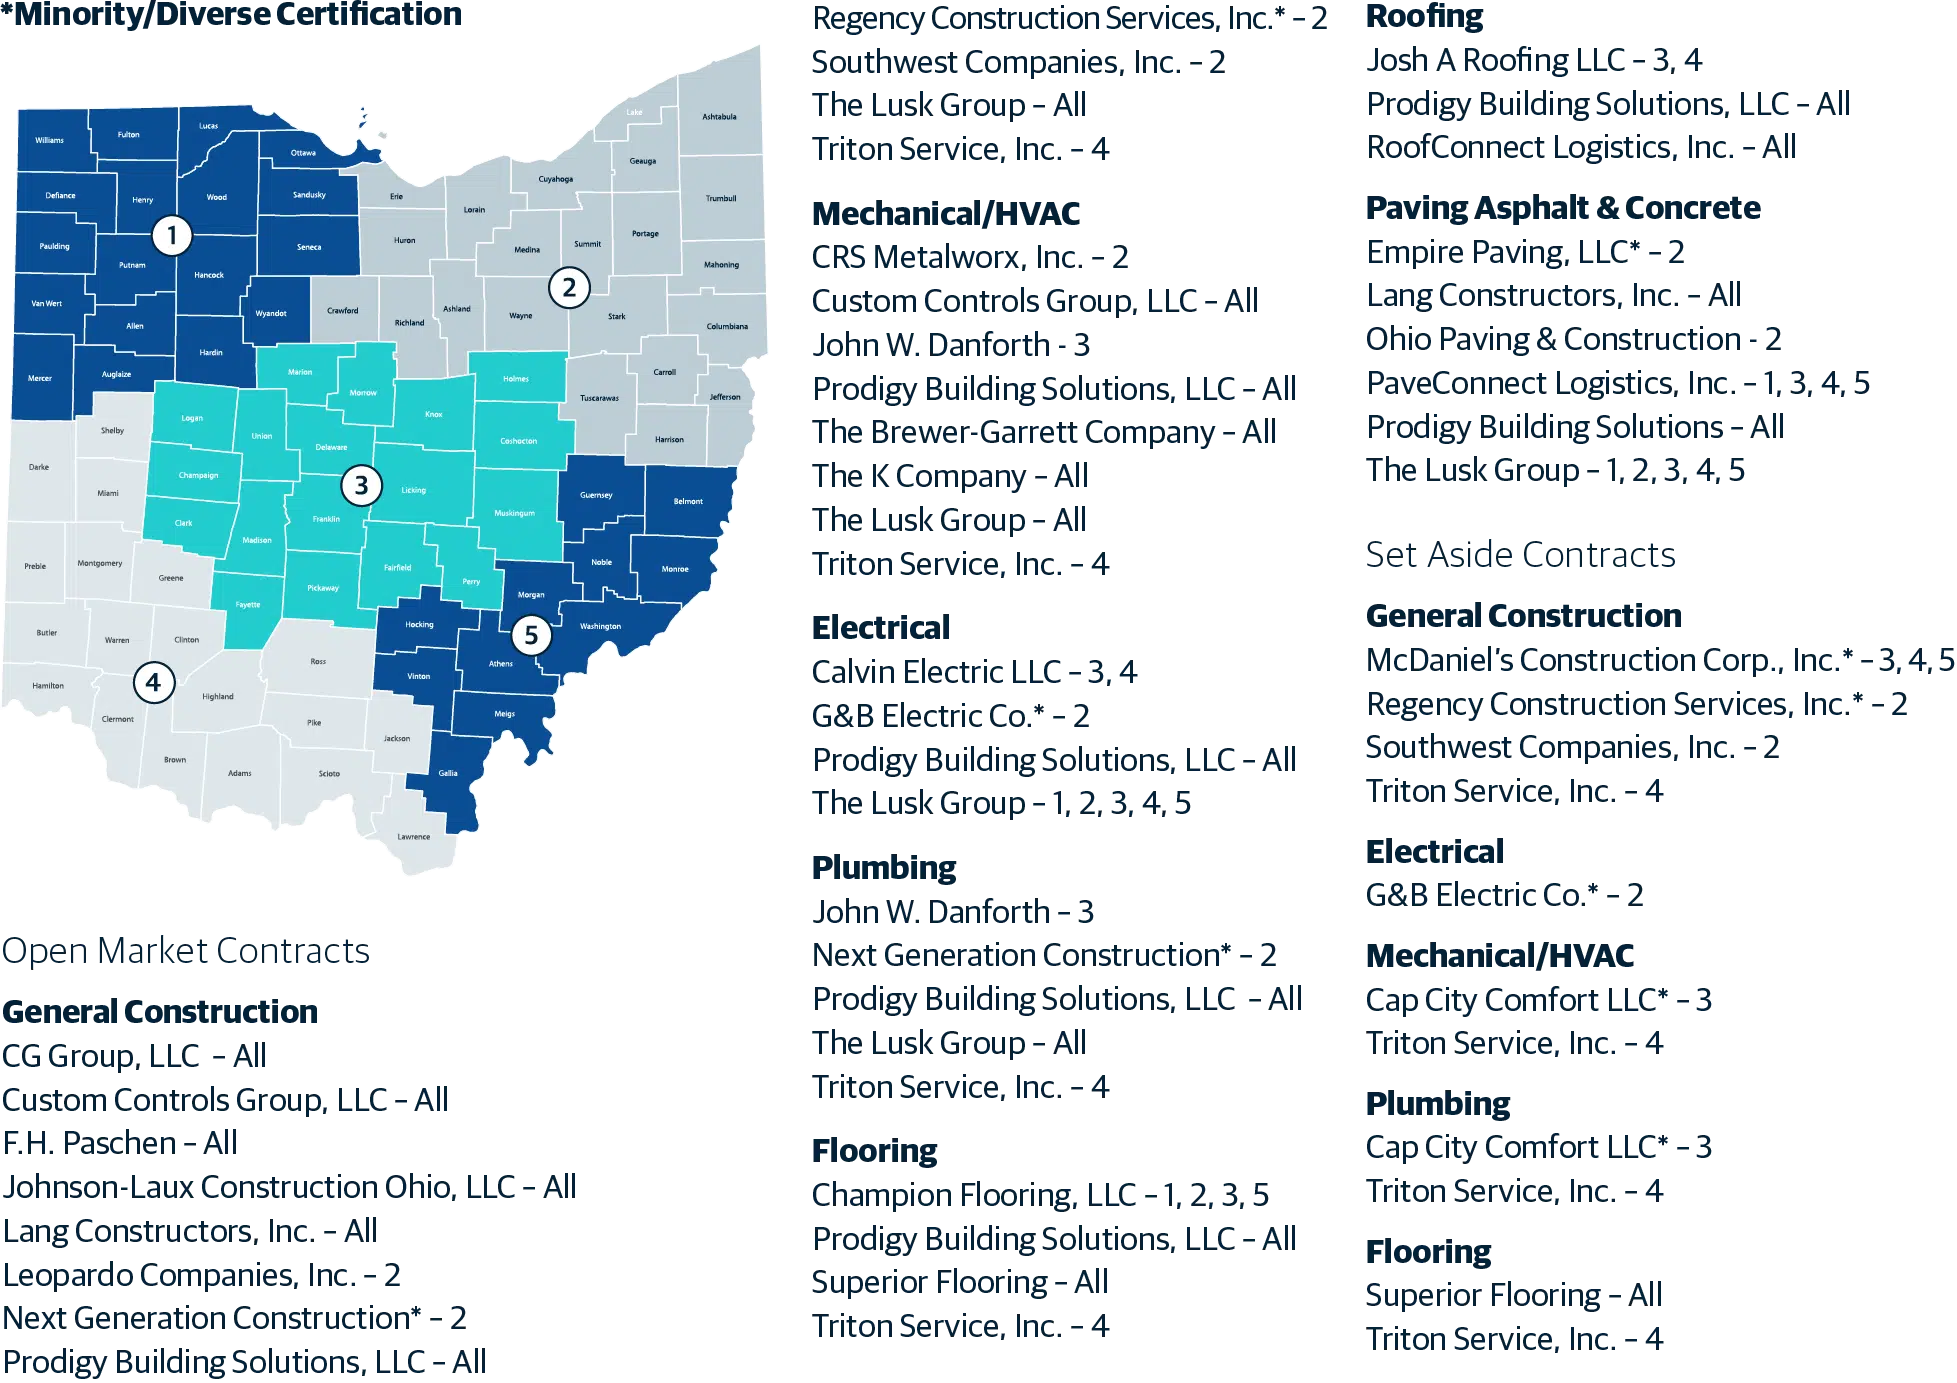 ezIQC Procurement Ohio Equalis Map